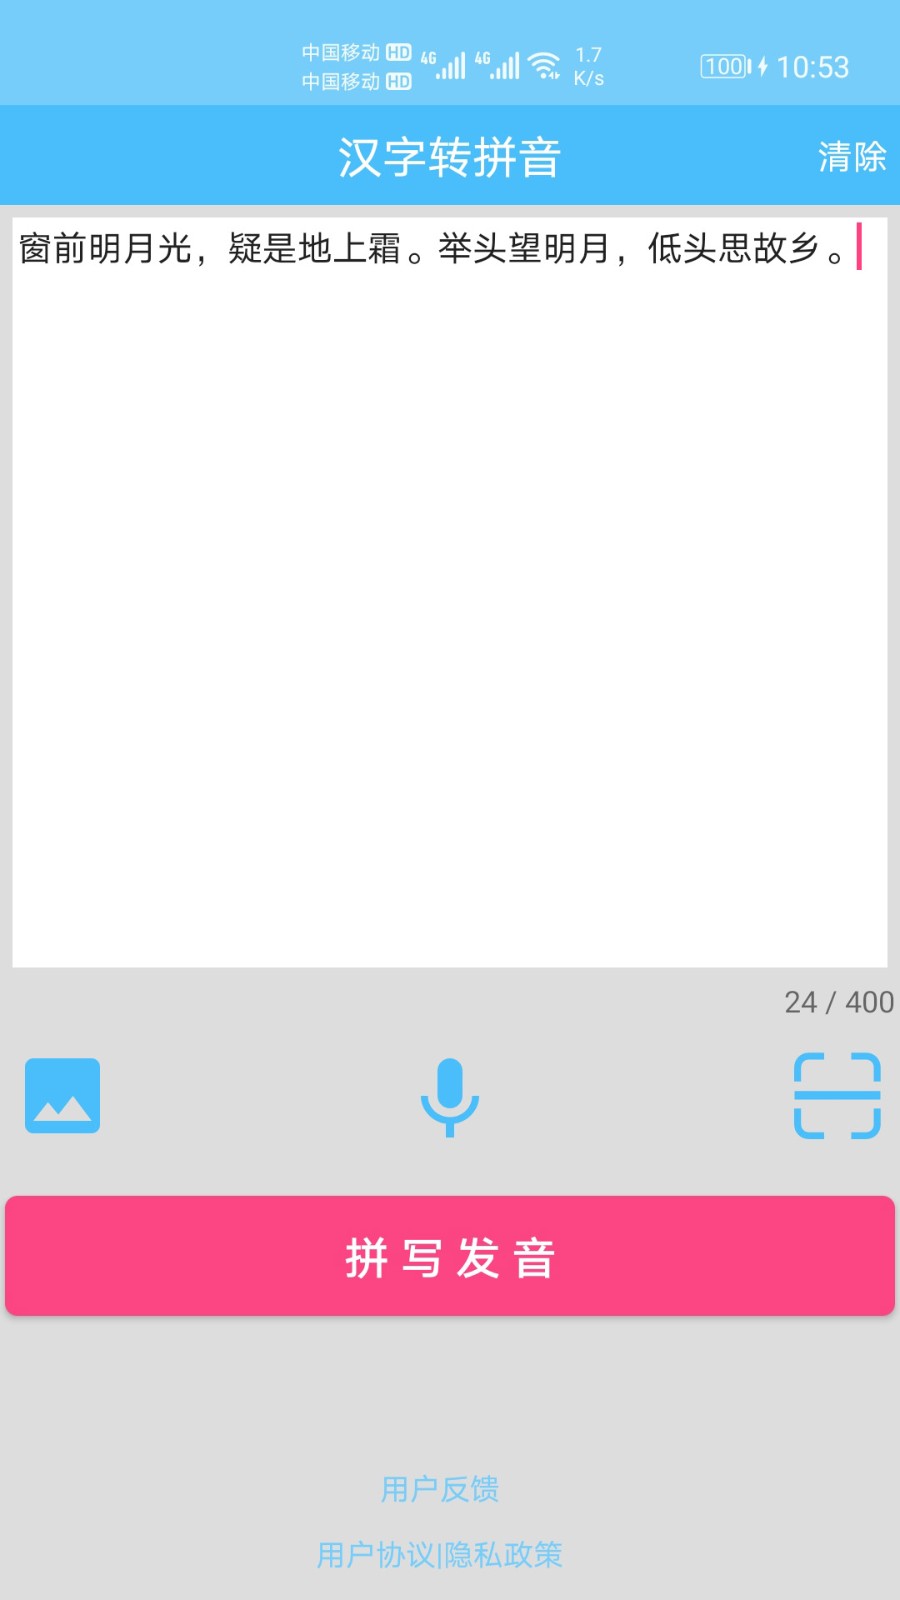 汉字拼音转换软件下载手机版